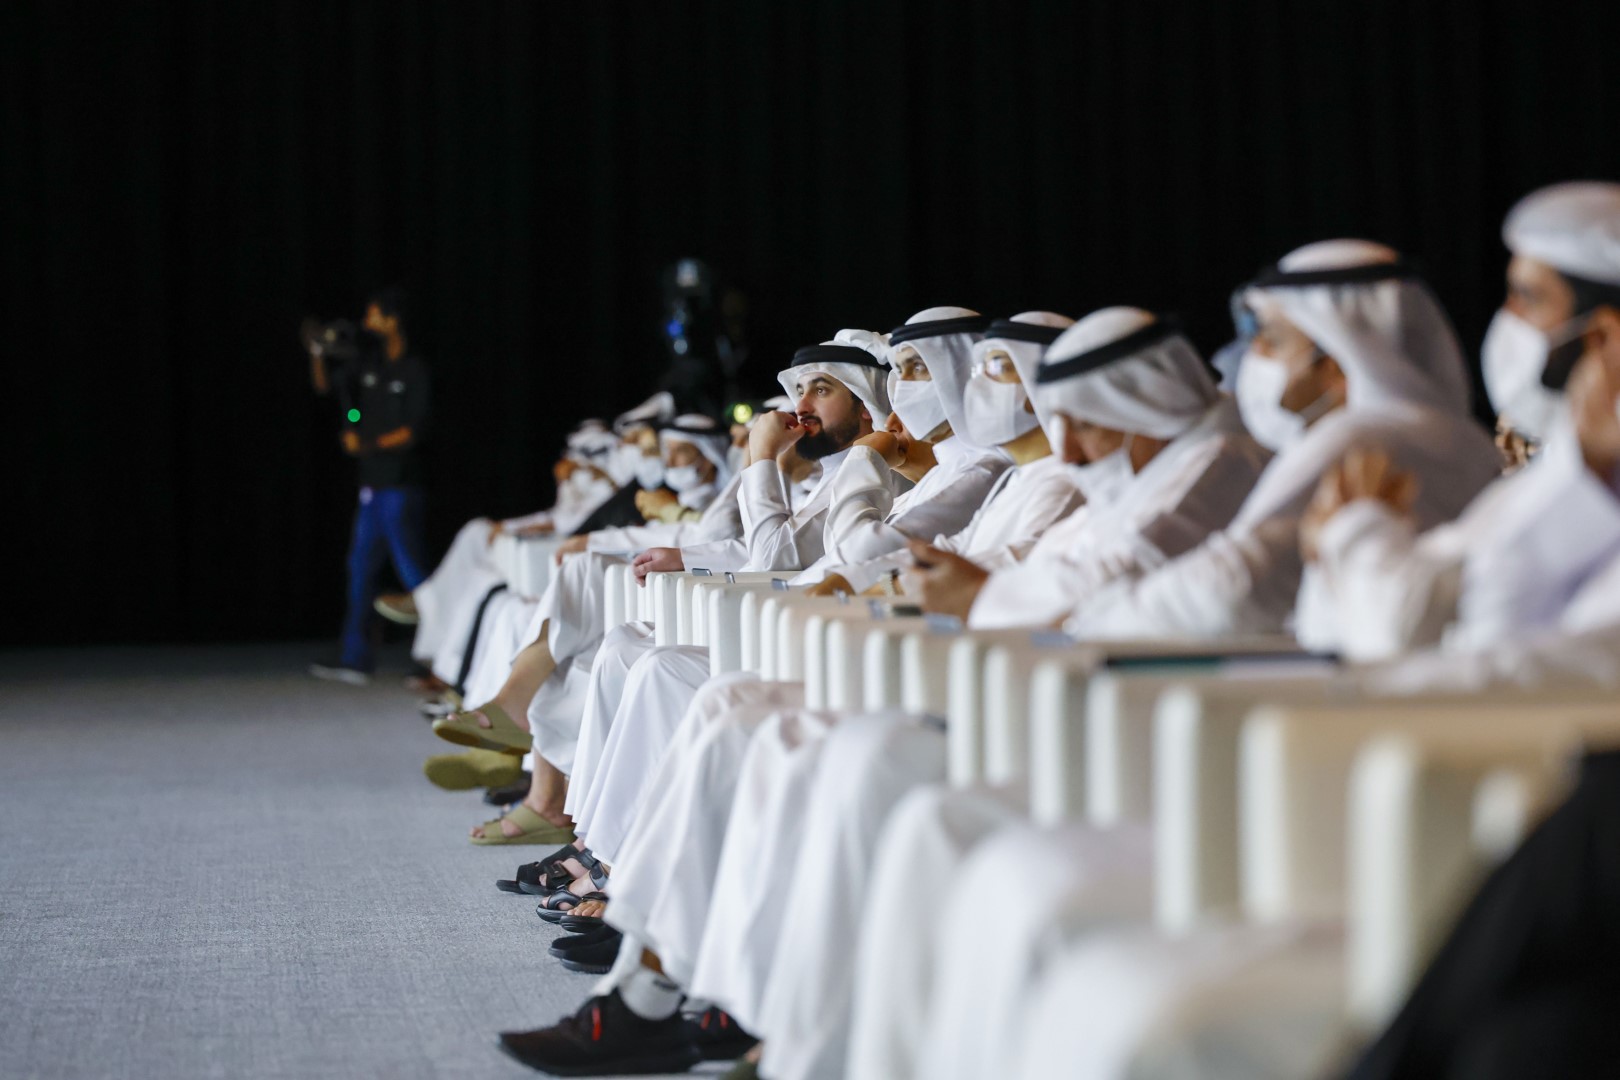 تحت رعاية حمدان بن محمد .. أحمد بن محمد يكرّم الفائزين في جائزة دبي للنقل المستدام 2021